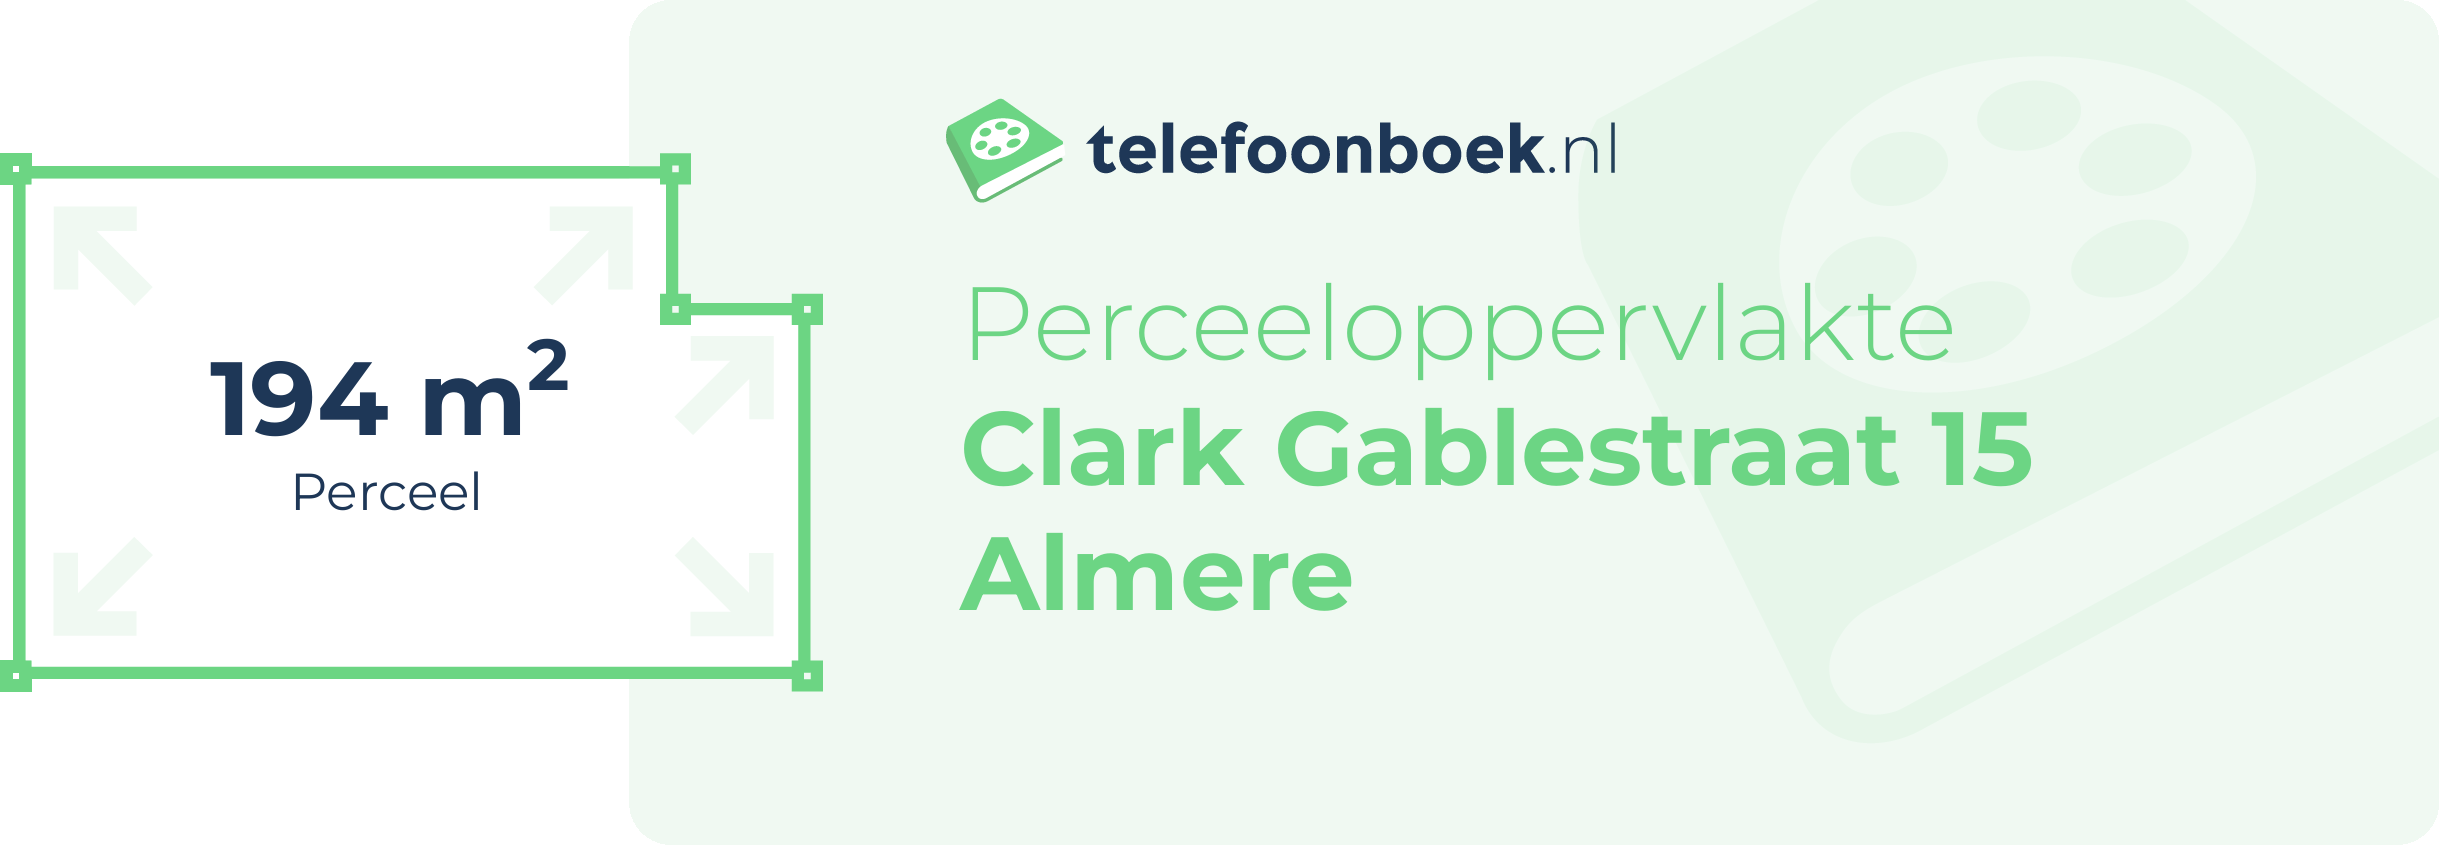 Perceeloppervlakte Clark Gablestraat 15 Almere